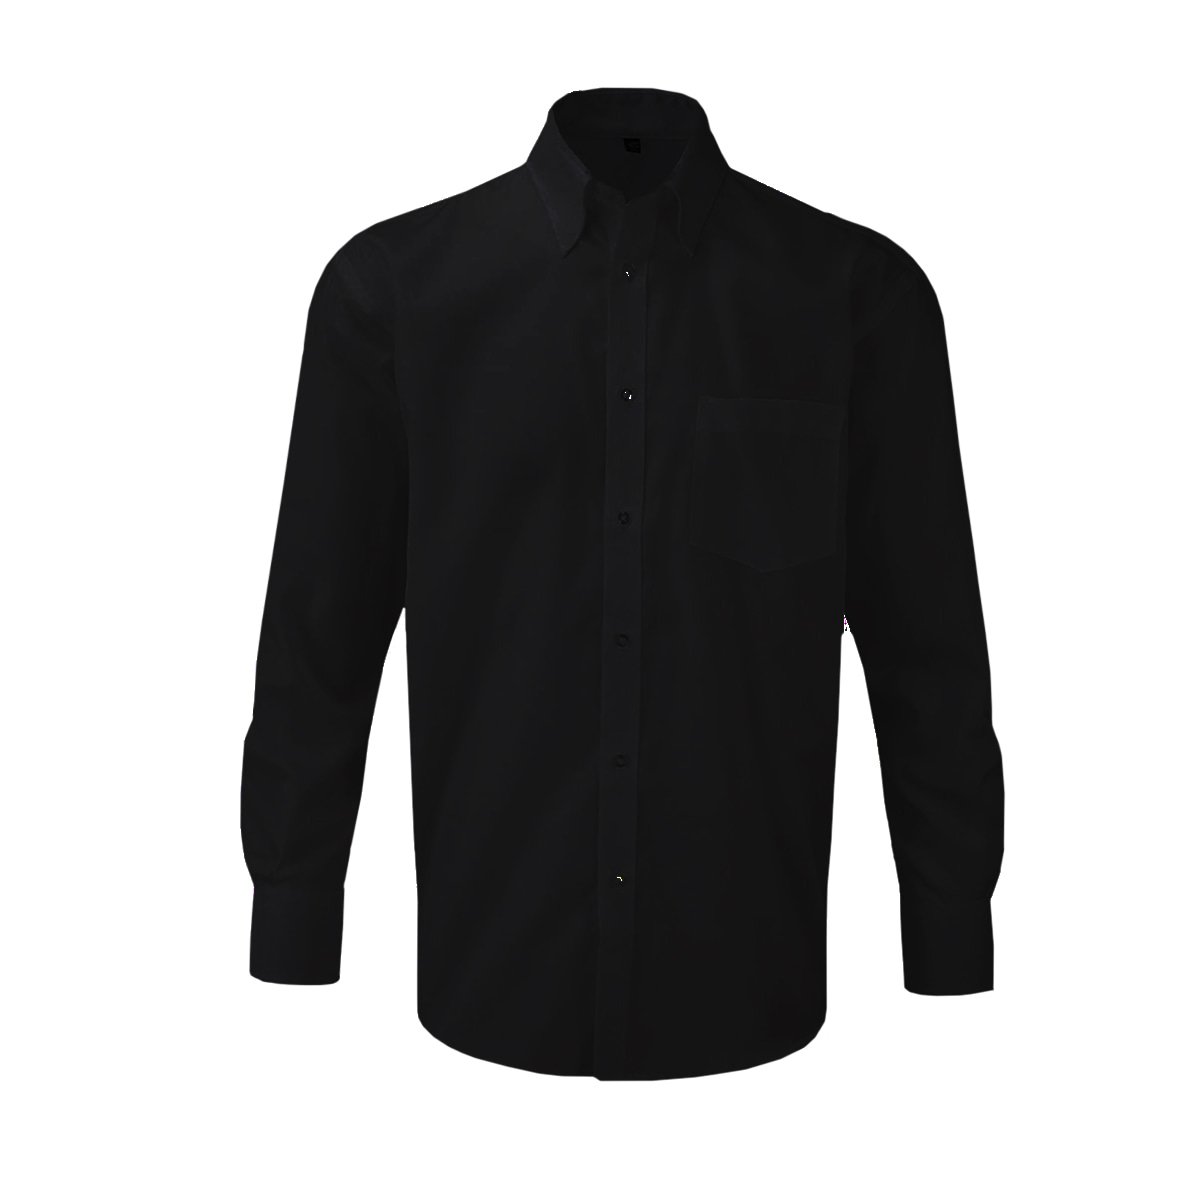 Camisetas negras para hombre Camiseta informal informal de manga